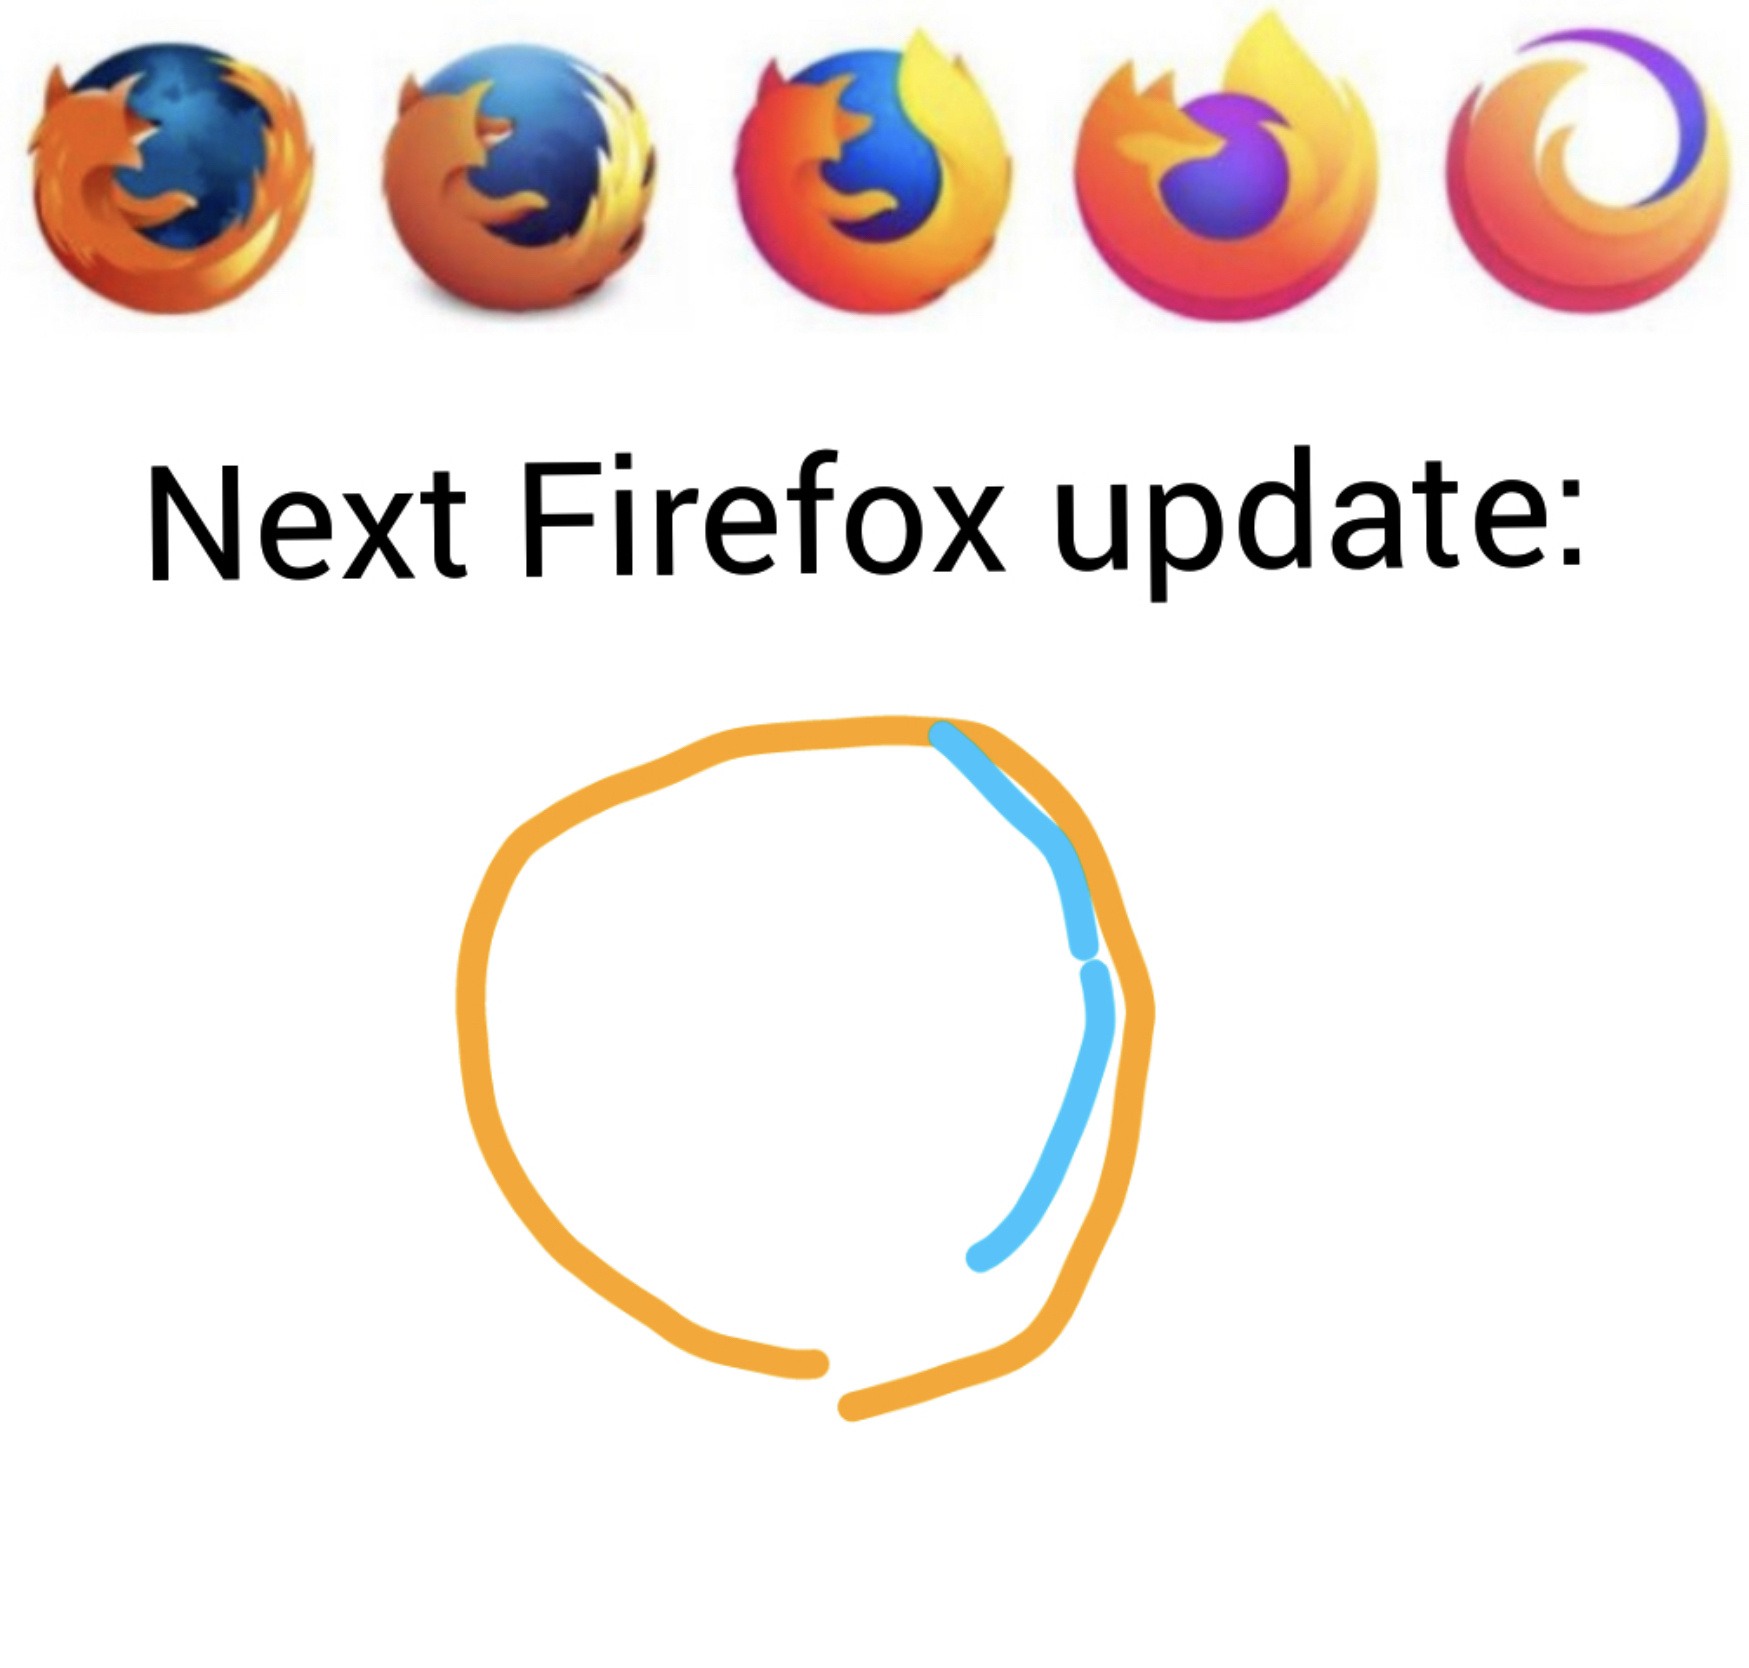 Firefox - meme